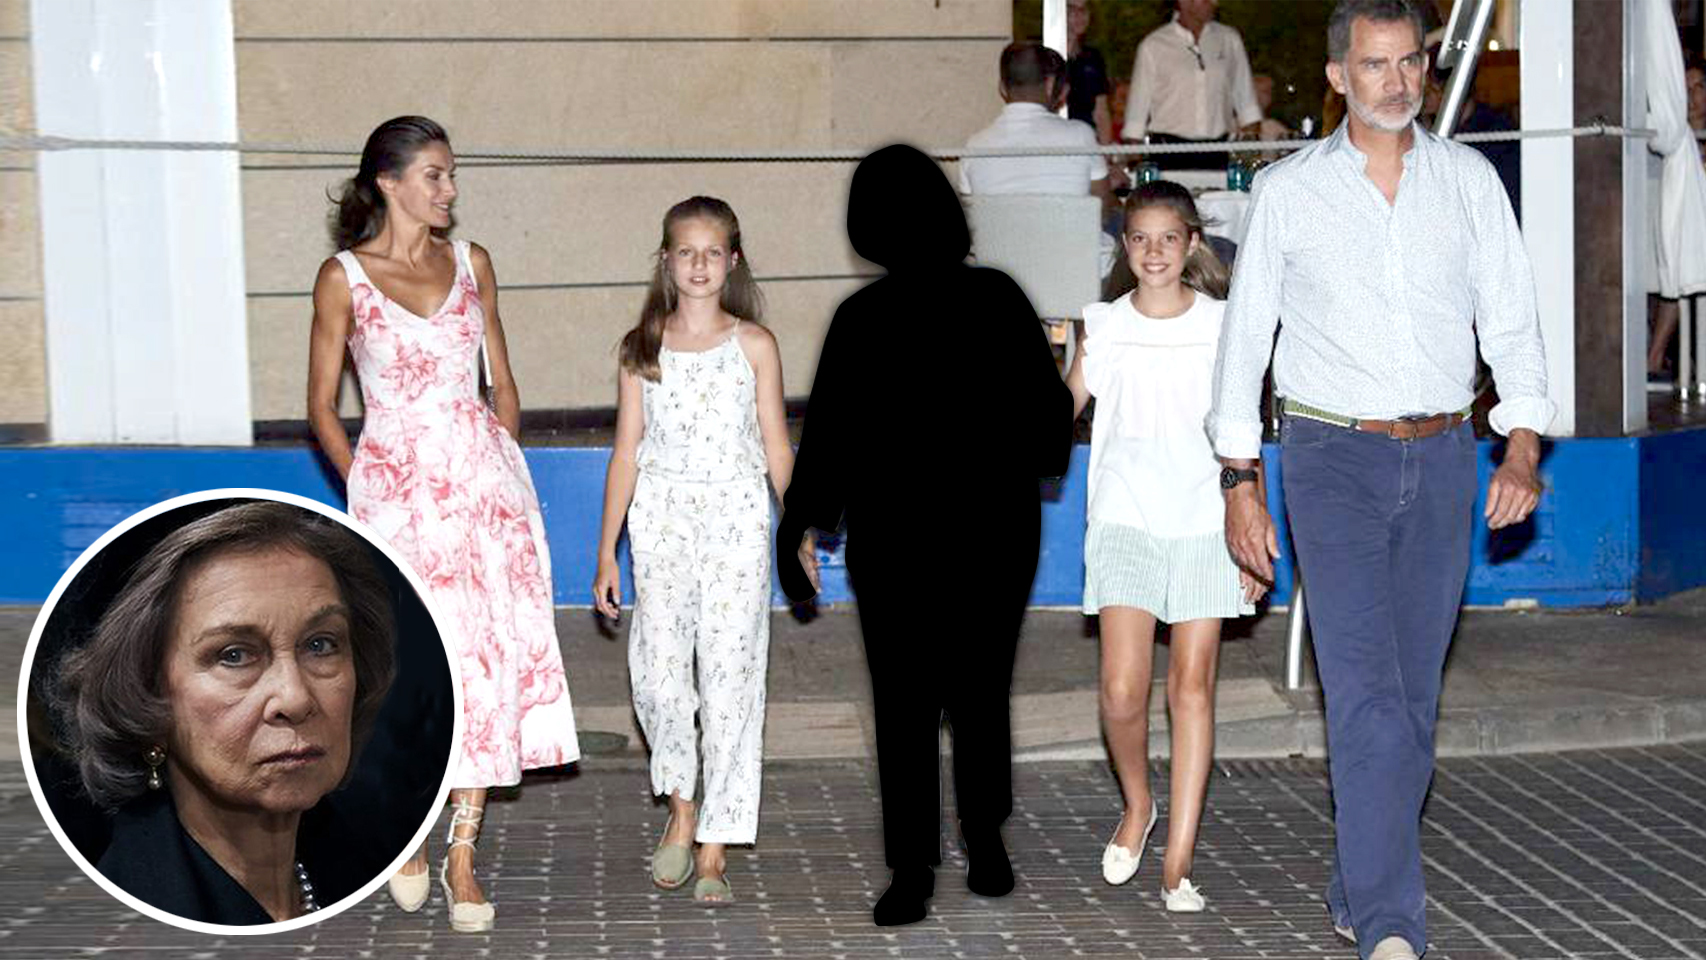 En 2019, los Reyes fueron a cenar con Sofía. Este año, la han borrado de sus fotos.